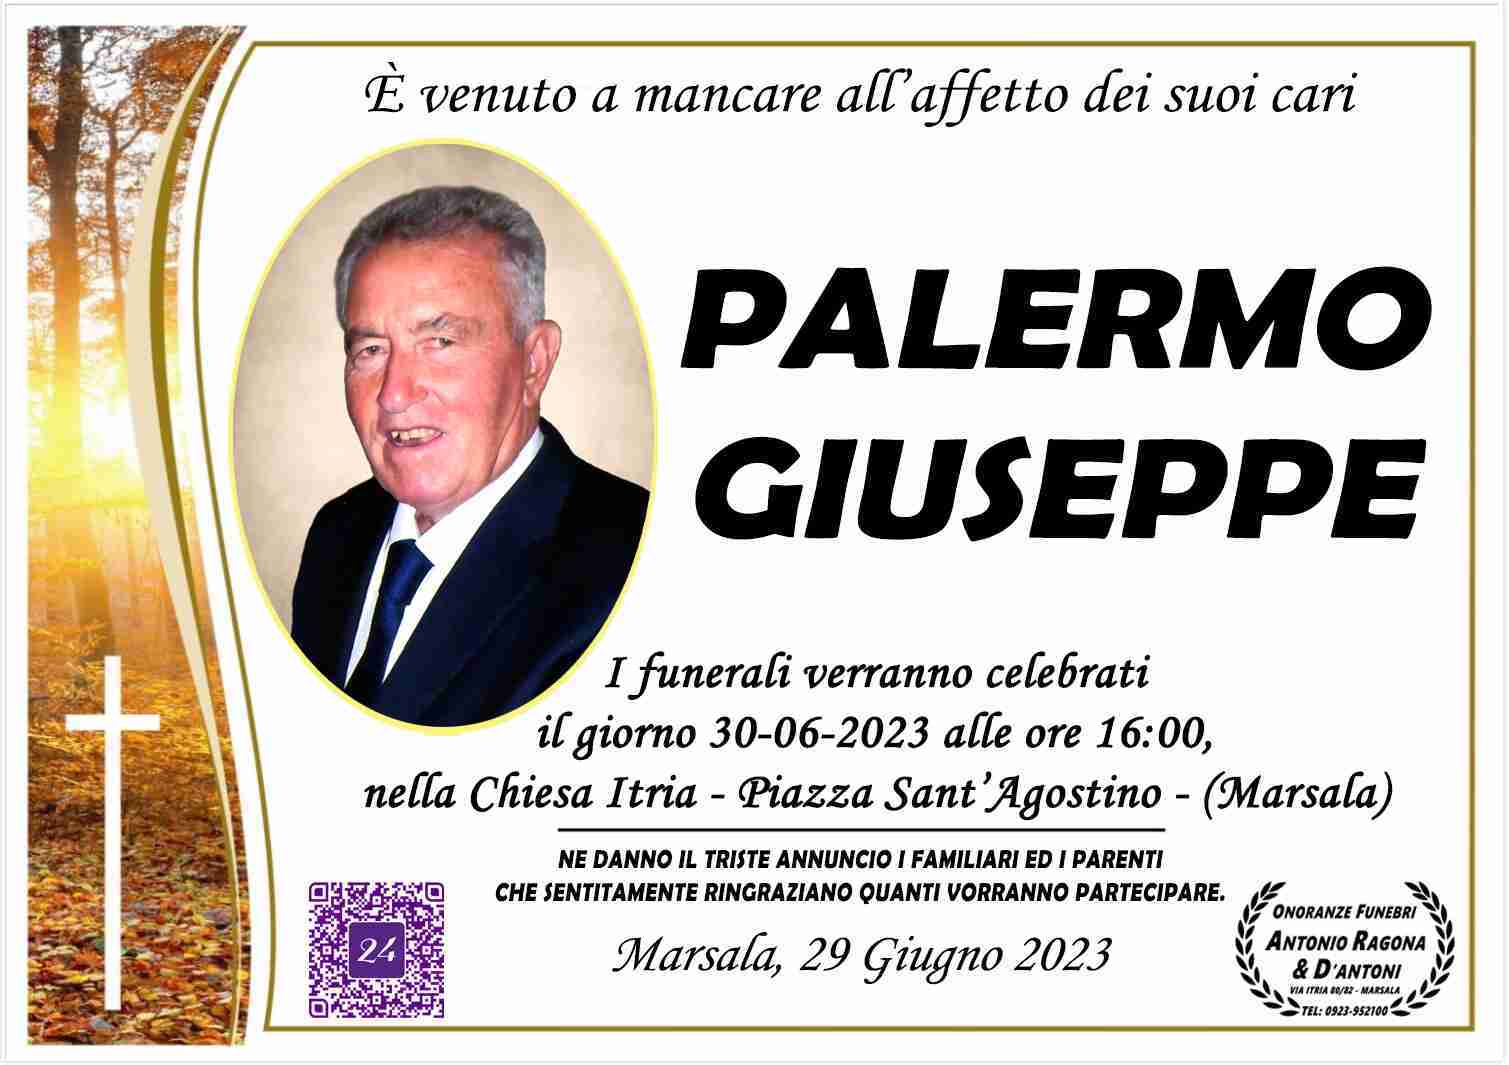 Giuseppe Palermo